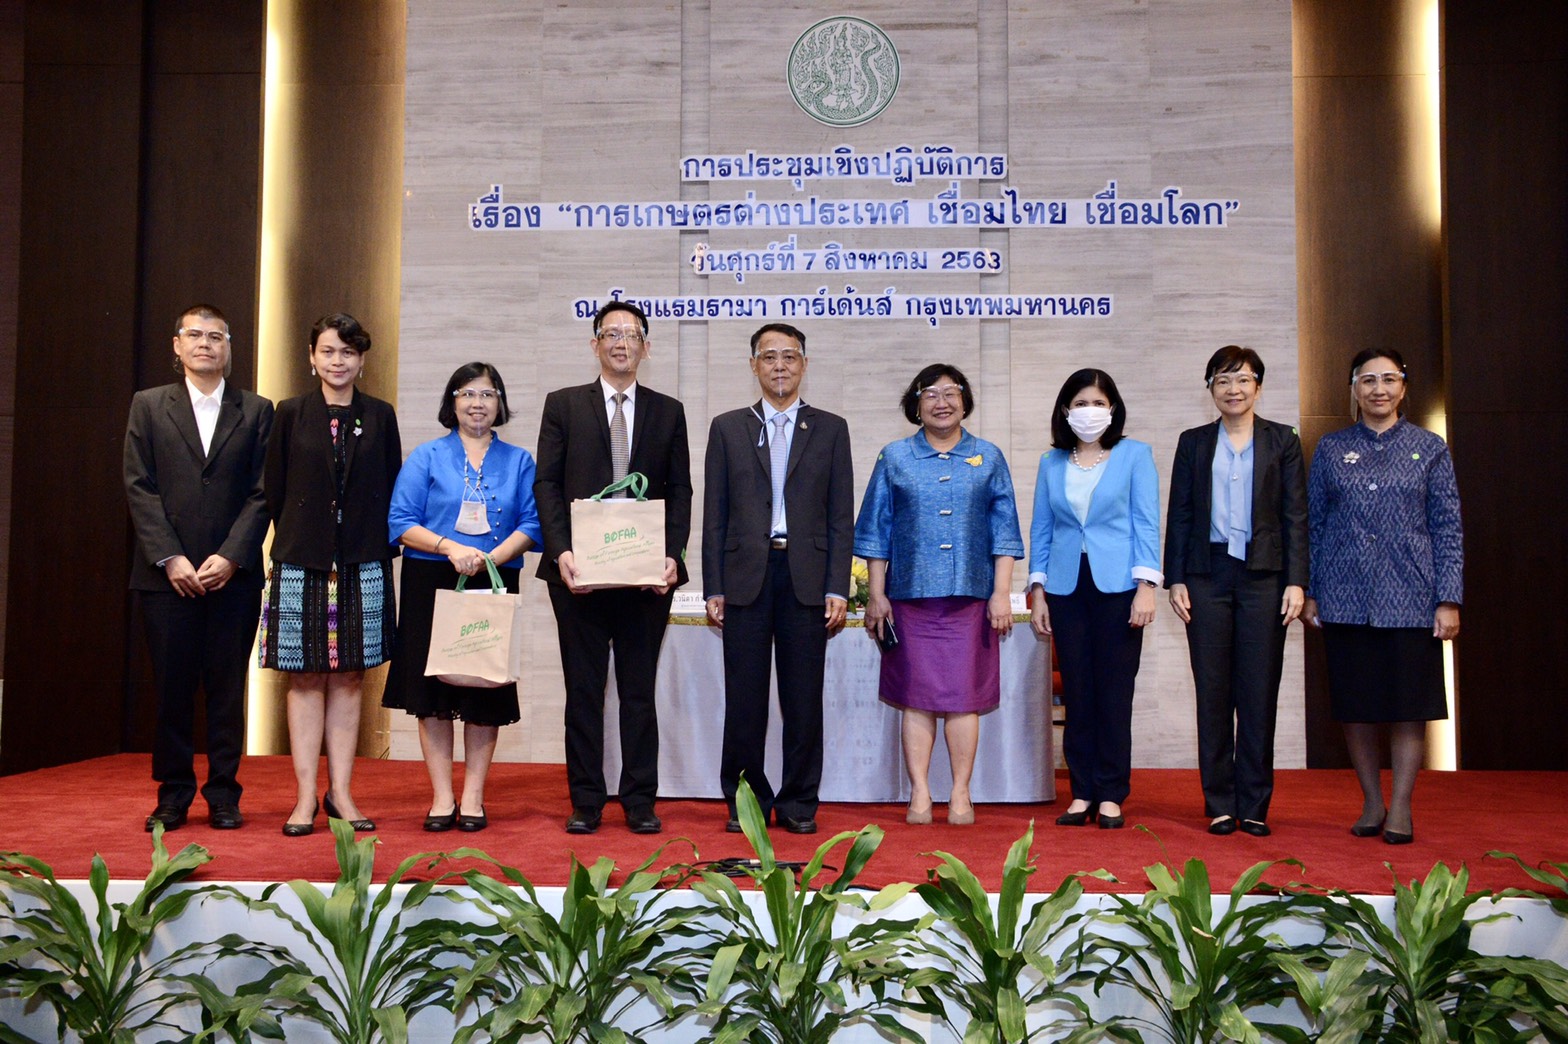 กระทรวงเกษตรฯ เปิดประชุมเชิงปฏิบัติการ เรื่อง การเกษตรต่างประเทศ เชื่อมไทย เชื่อมโลก